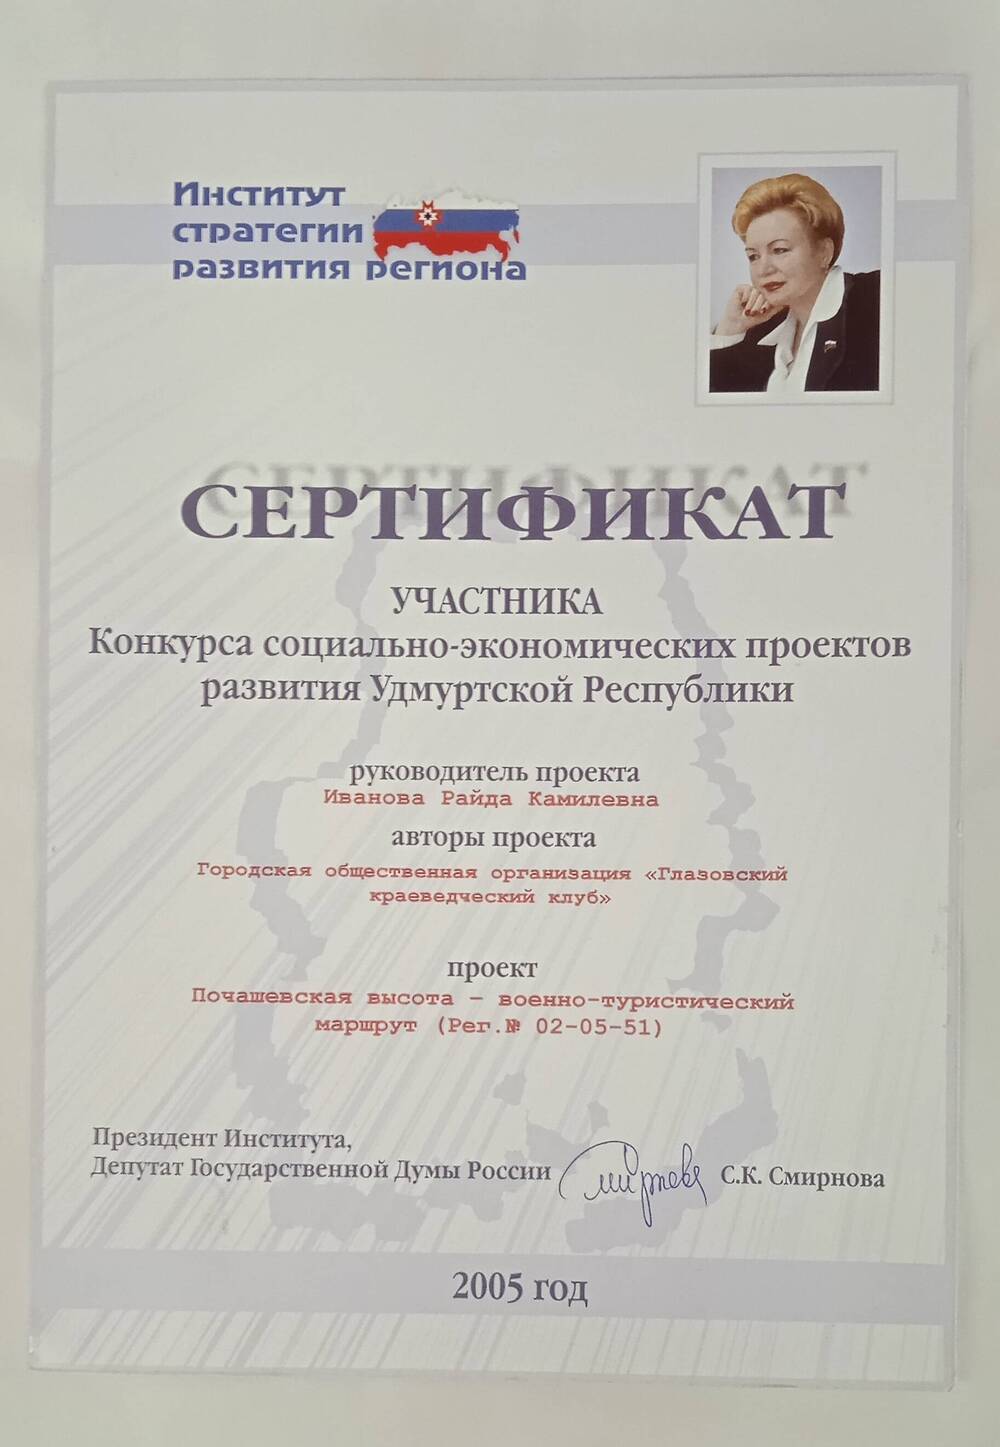 Сертификат участника руководителя проекта Почашевская высота.